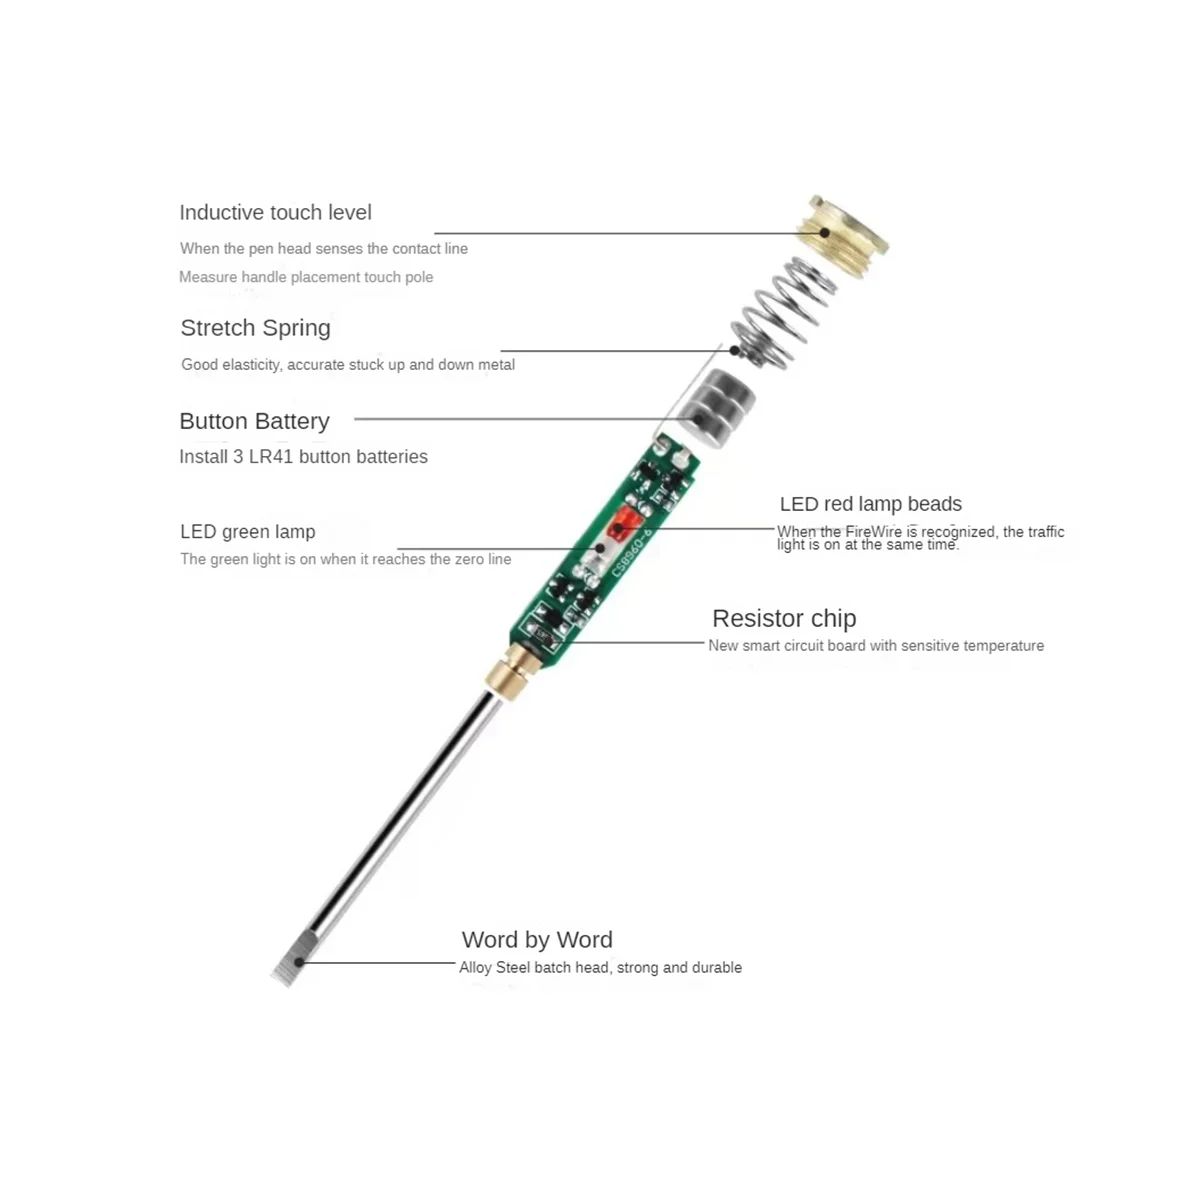  többfunkciós elektromos toll nagy fényerejű dupla lámpás elektromos toll mérő villanyszerelő indukciós ceruza - 3